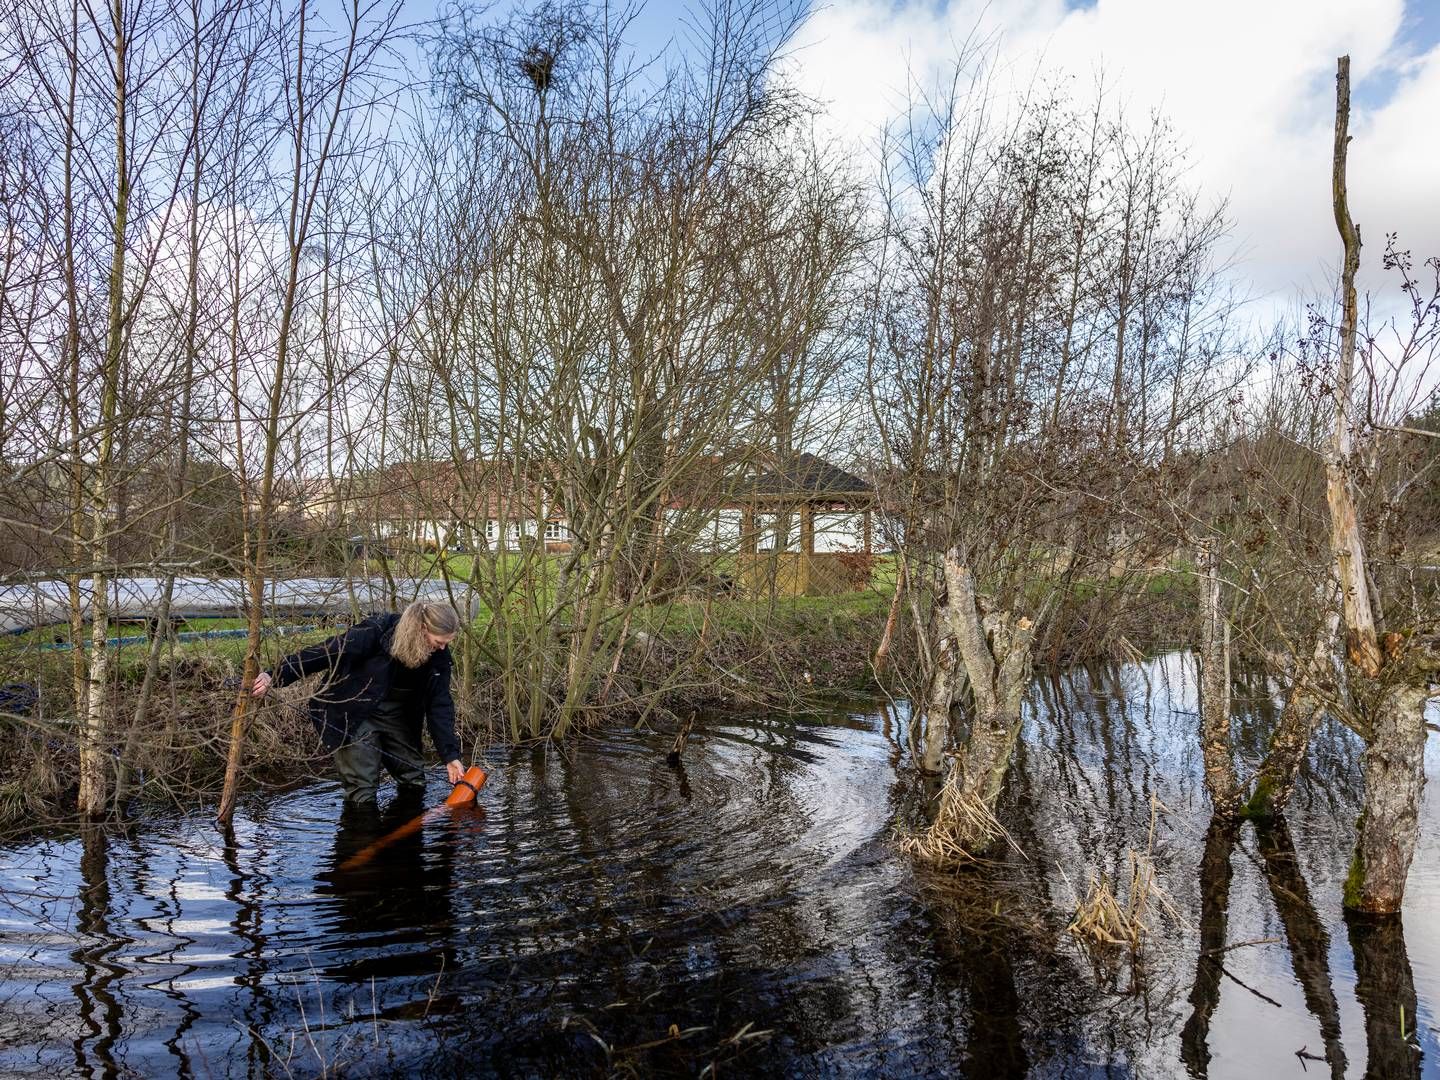 Oversvømmelser af åer og vandløb - her Gudenåen - kan meget vel blive mere almindeligt i fremtiden. Brancheorganisationen F&P opfordrer til øget fokus på forebyggelse. | Foto: Joachim Ladefoged